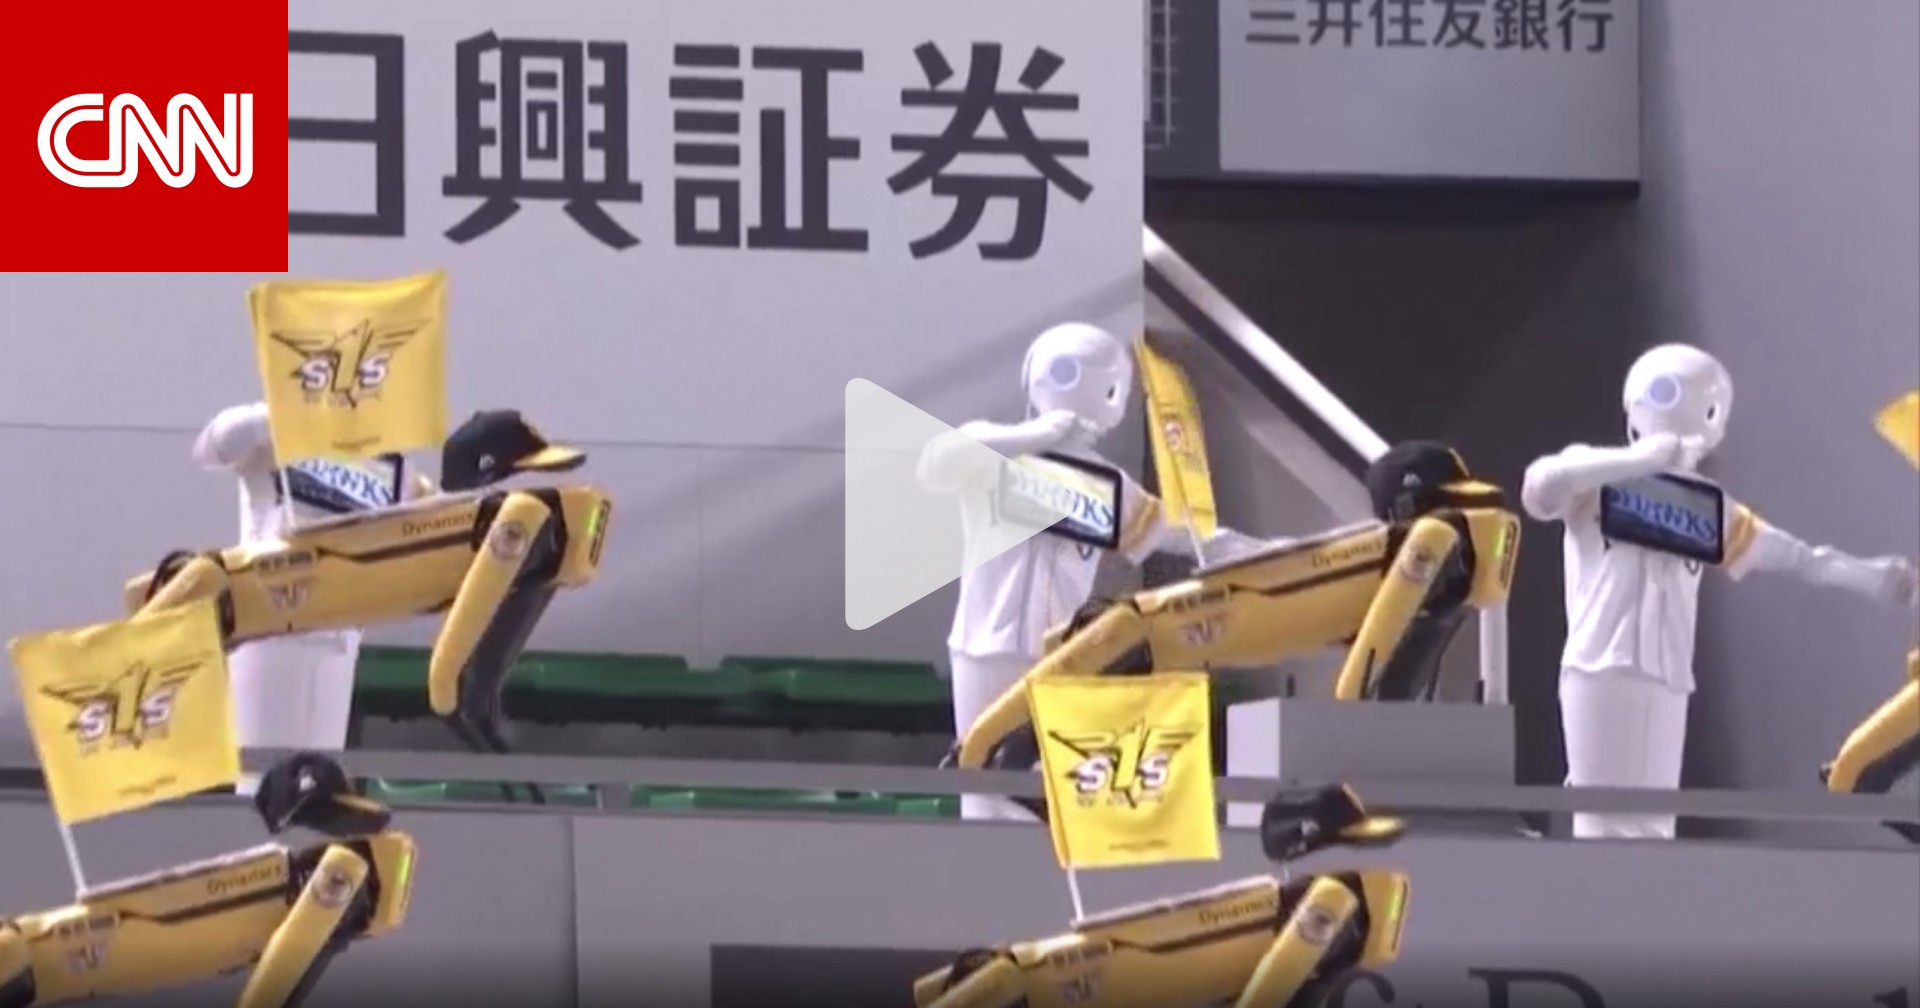 روبوتات ترقص تشجيعا لفريق بيسبول في ملعب فارغ في اليابان